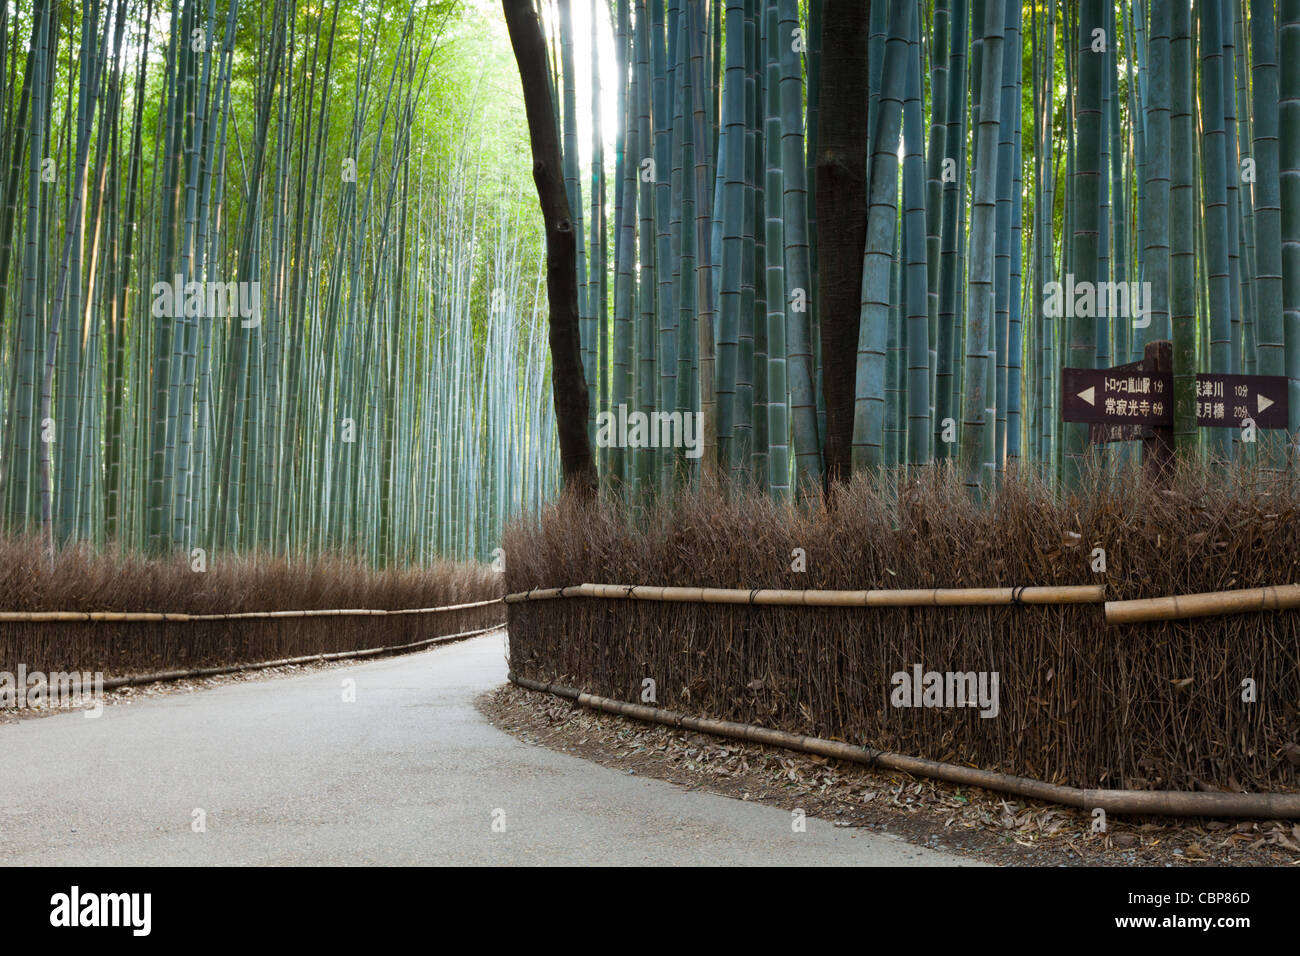 Route à travers la forêt de bambous à Arashiyama, près de Sagano, à la périphérie ouest de Kyoto, au Japon. Banque D'Images